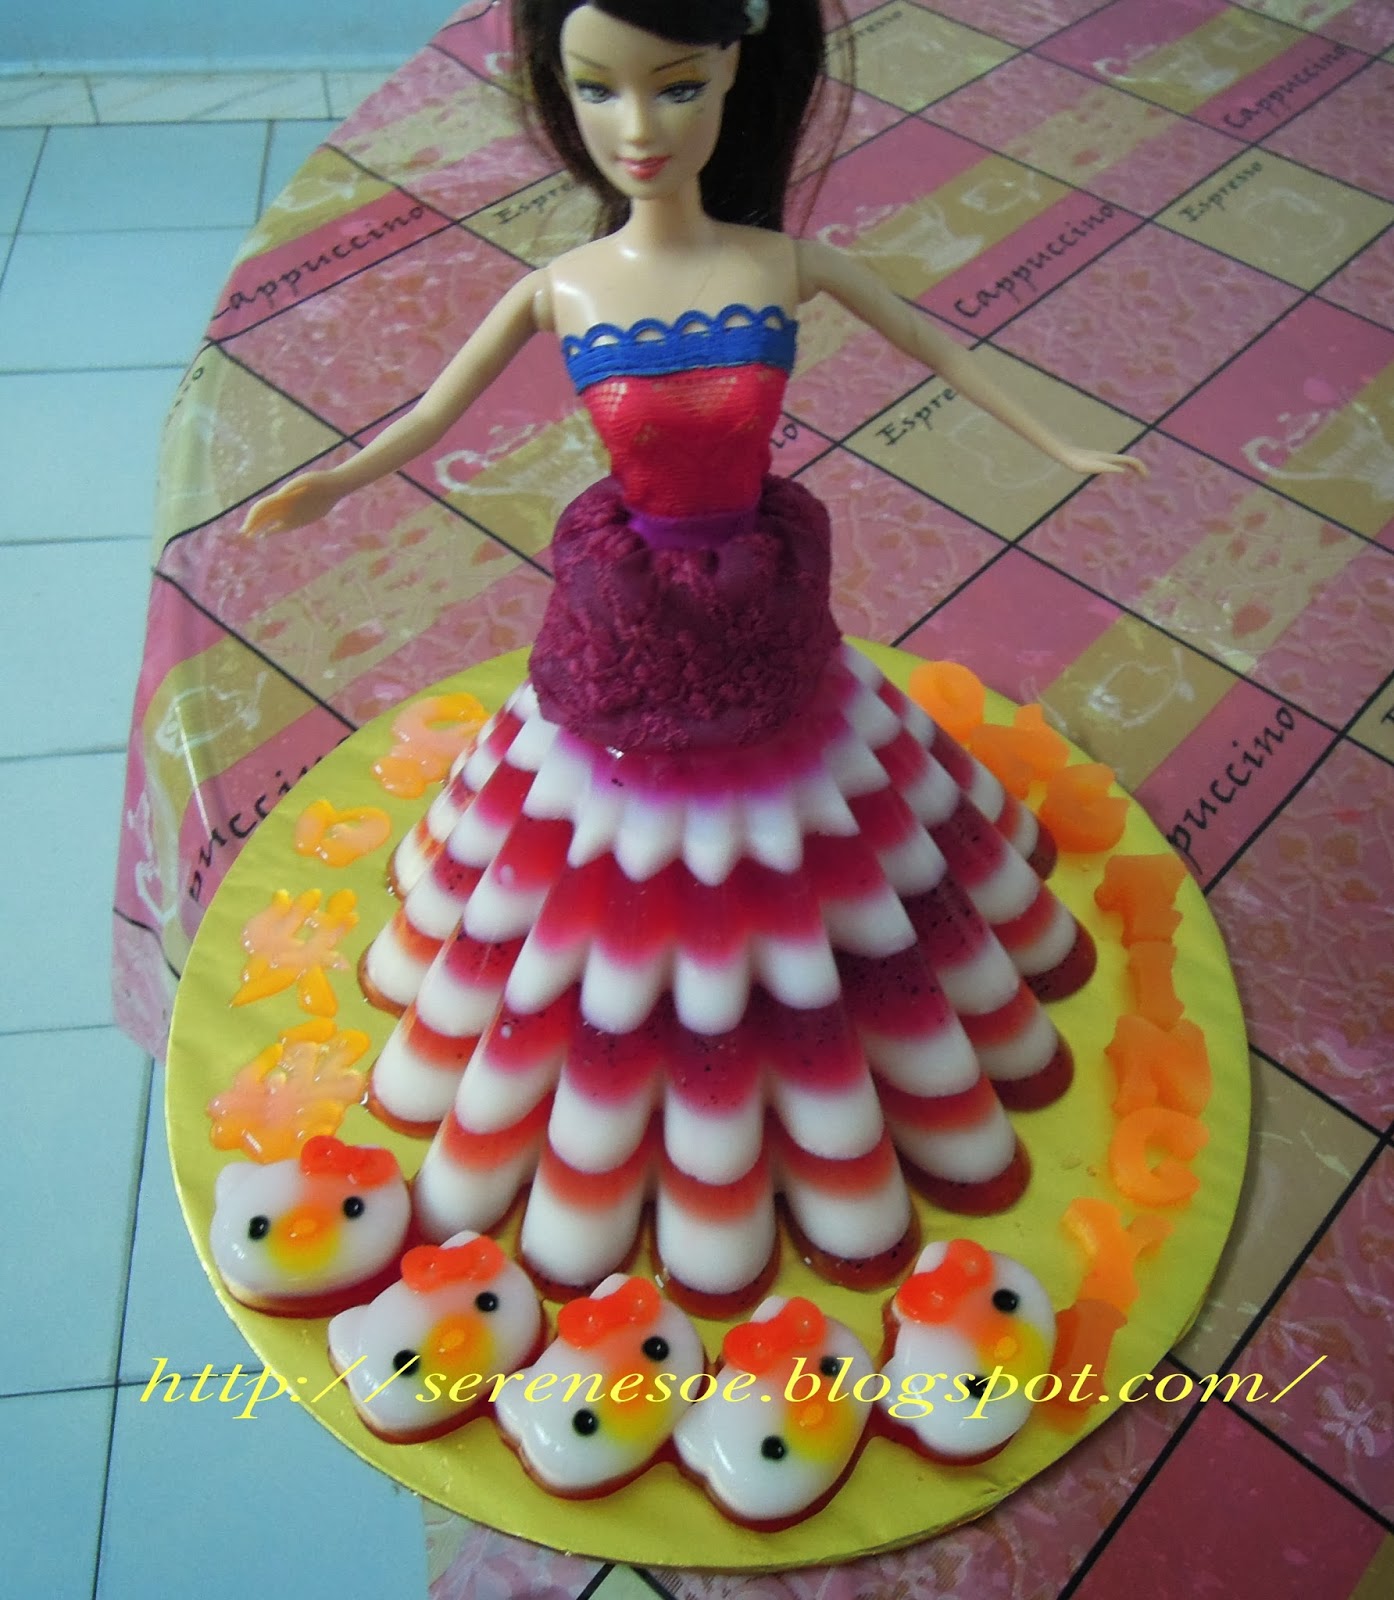 乔伊丝乐厨房: 芭比娃娃生日蛋糕